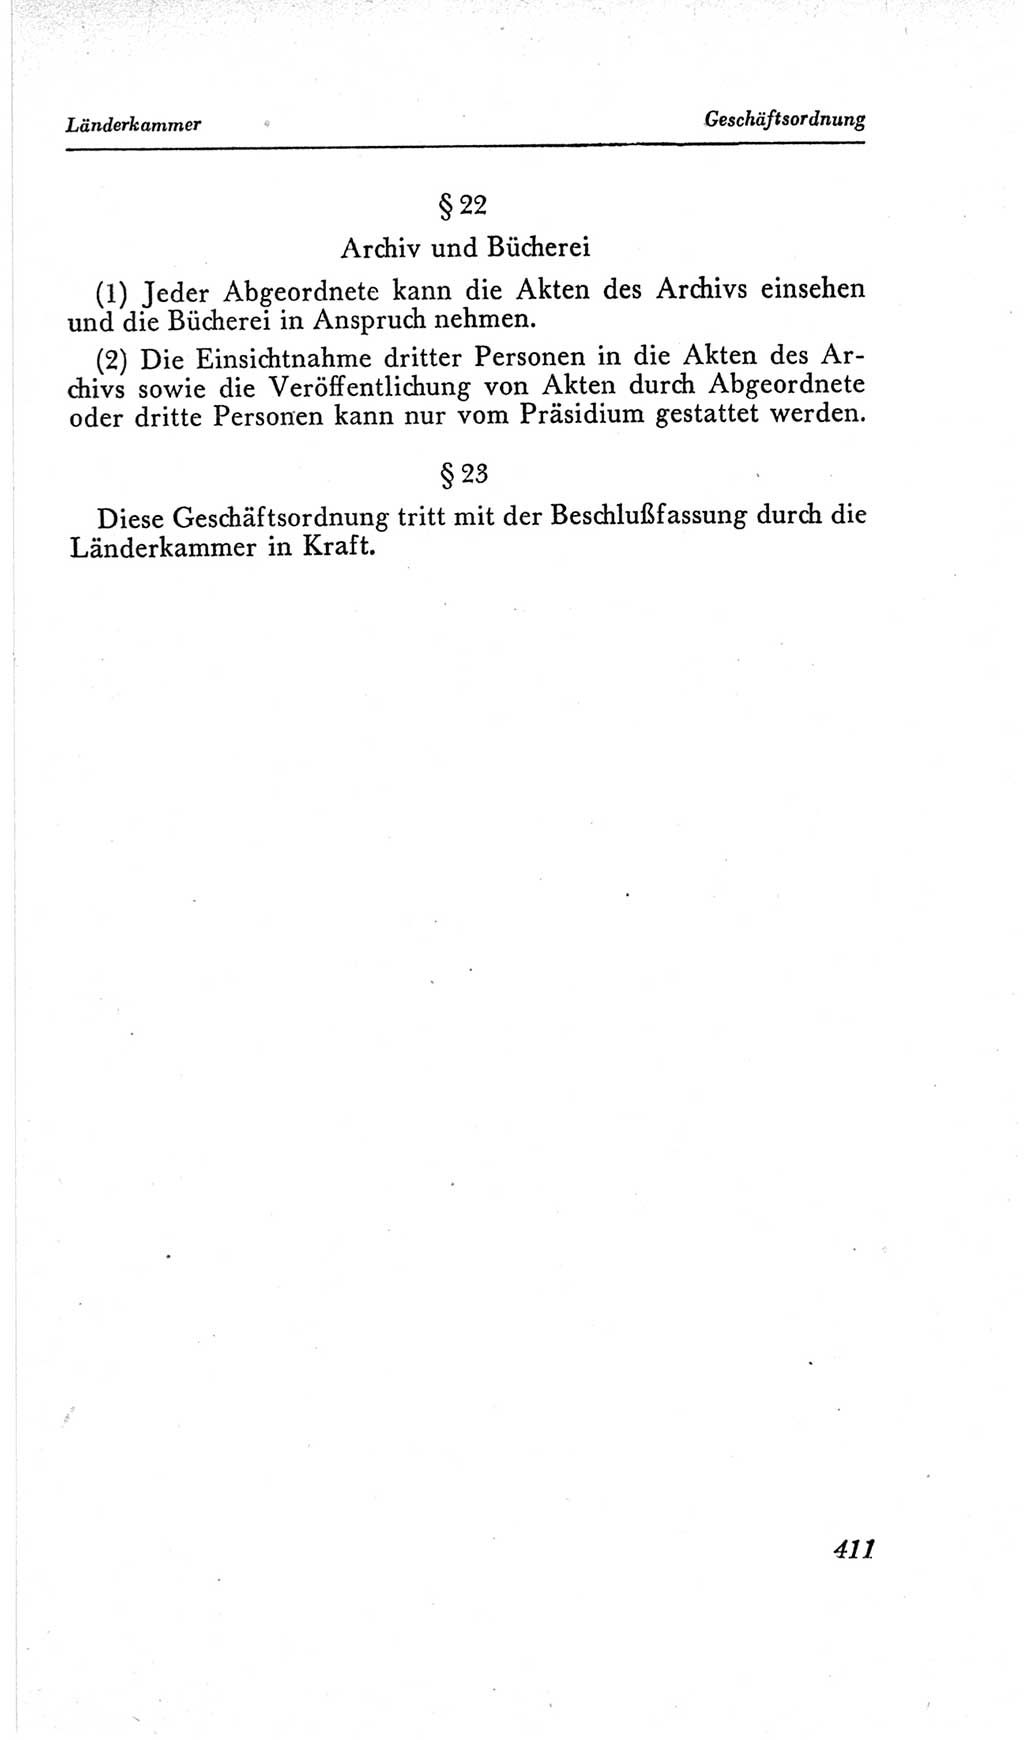 Handbuch der Volkskammer (VK) der Deutschen Demokratischen Republik (DDR), 2. Wahlperiode 1954-1958, Seite 411 (Hdb. VK. DDR, 2. WP. 1954-1958, S. 411)